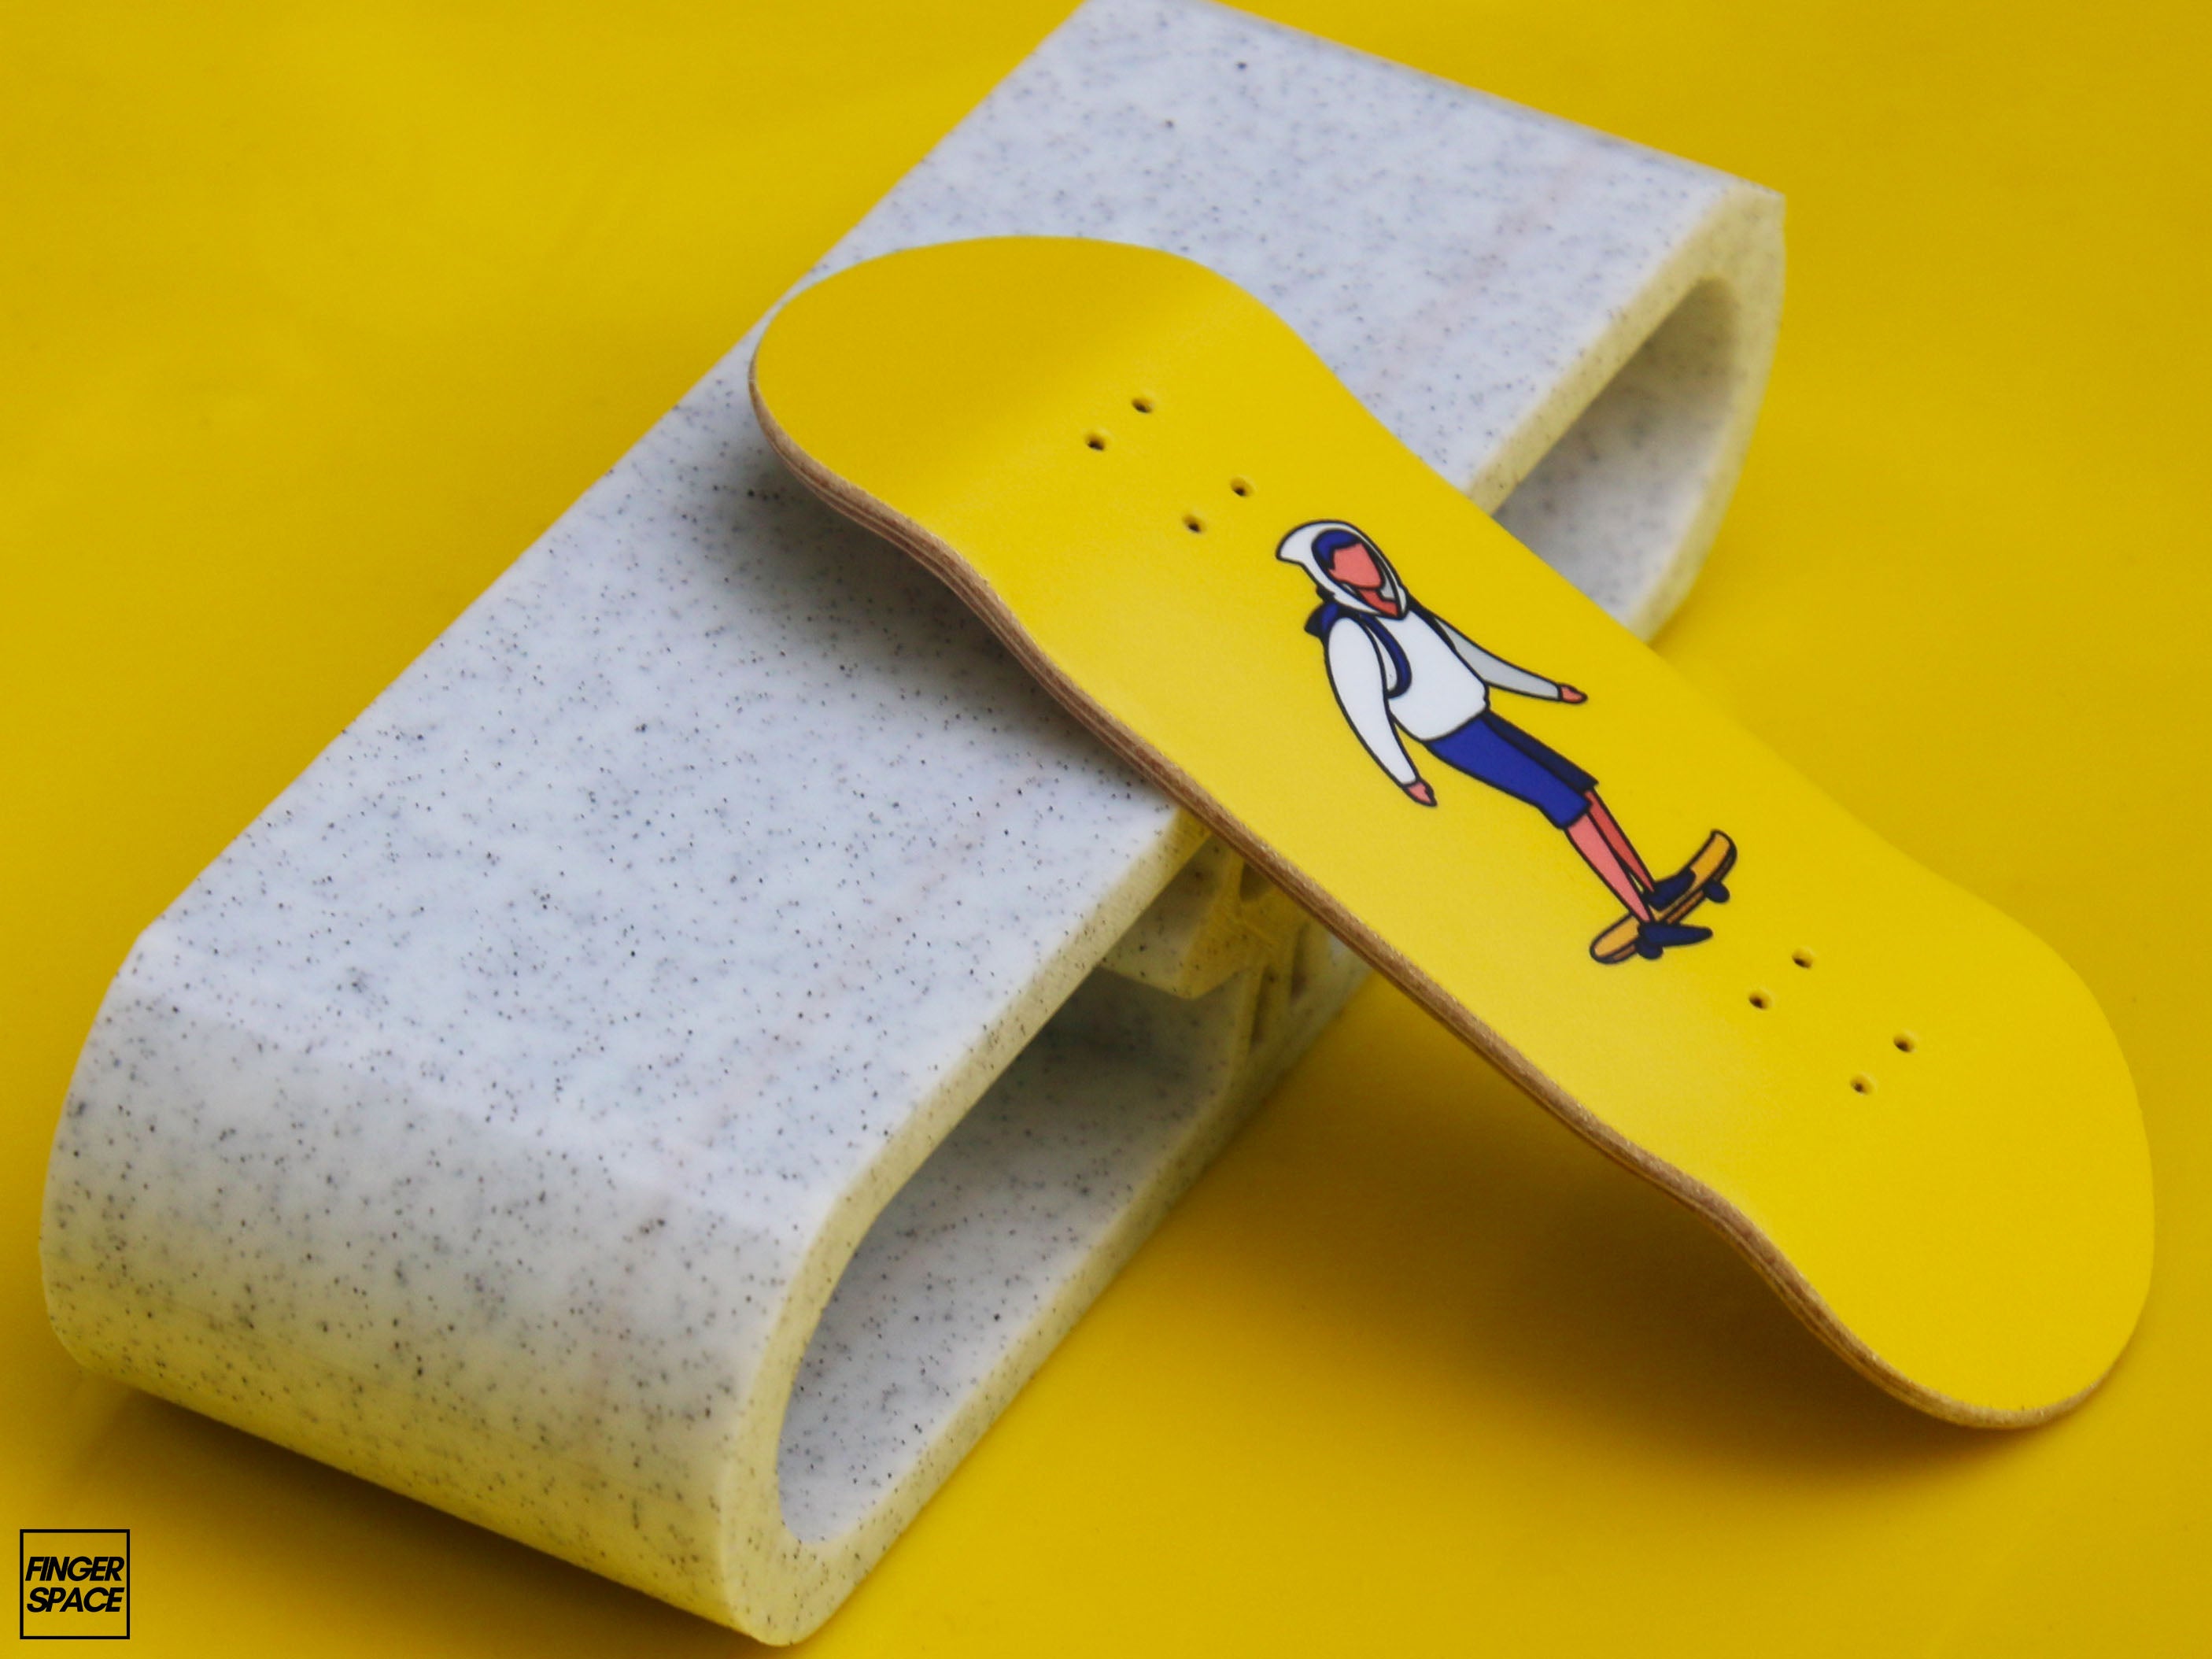 "Skater Boy" Eco Series Complete Fingerboard Setup